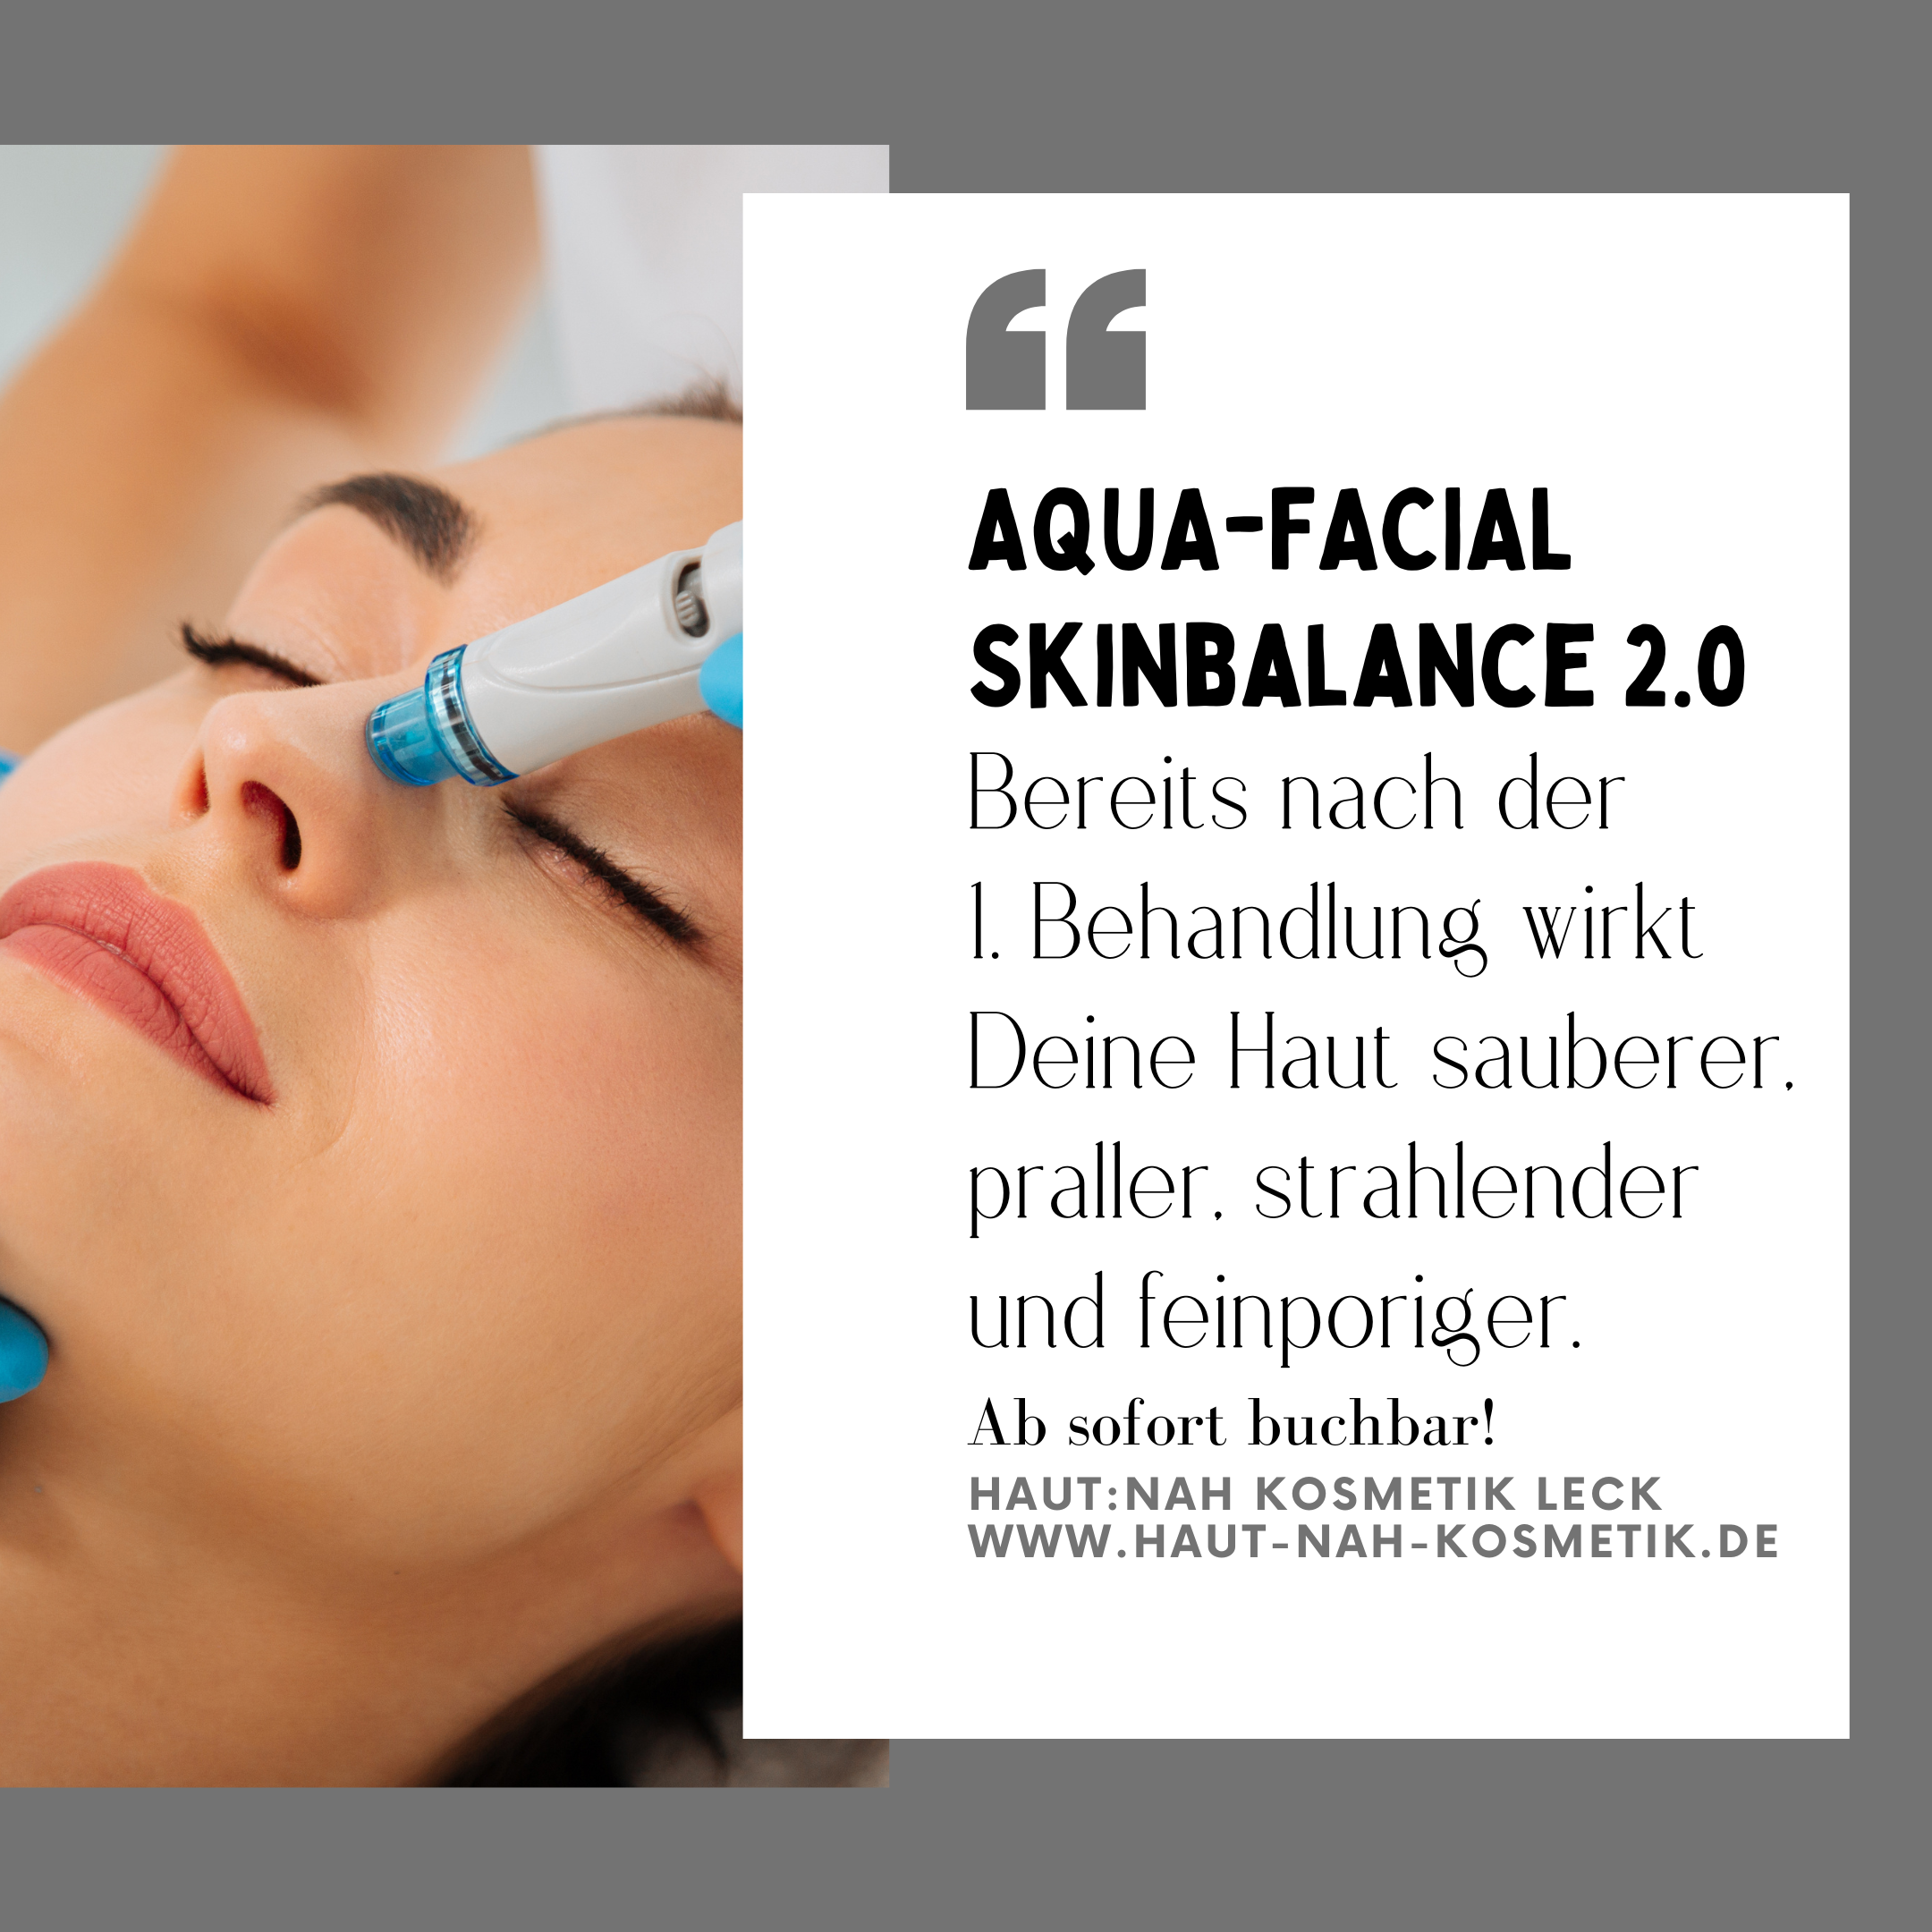 Featured image for “Aqua-Facial Skinbalance 2.0”